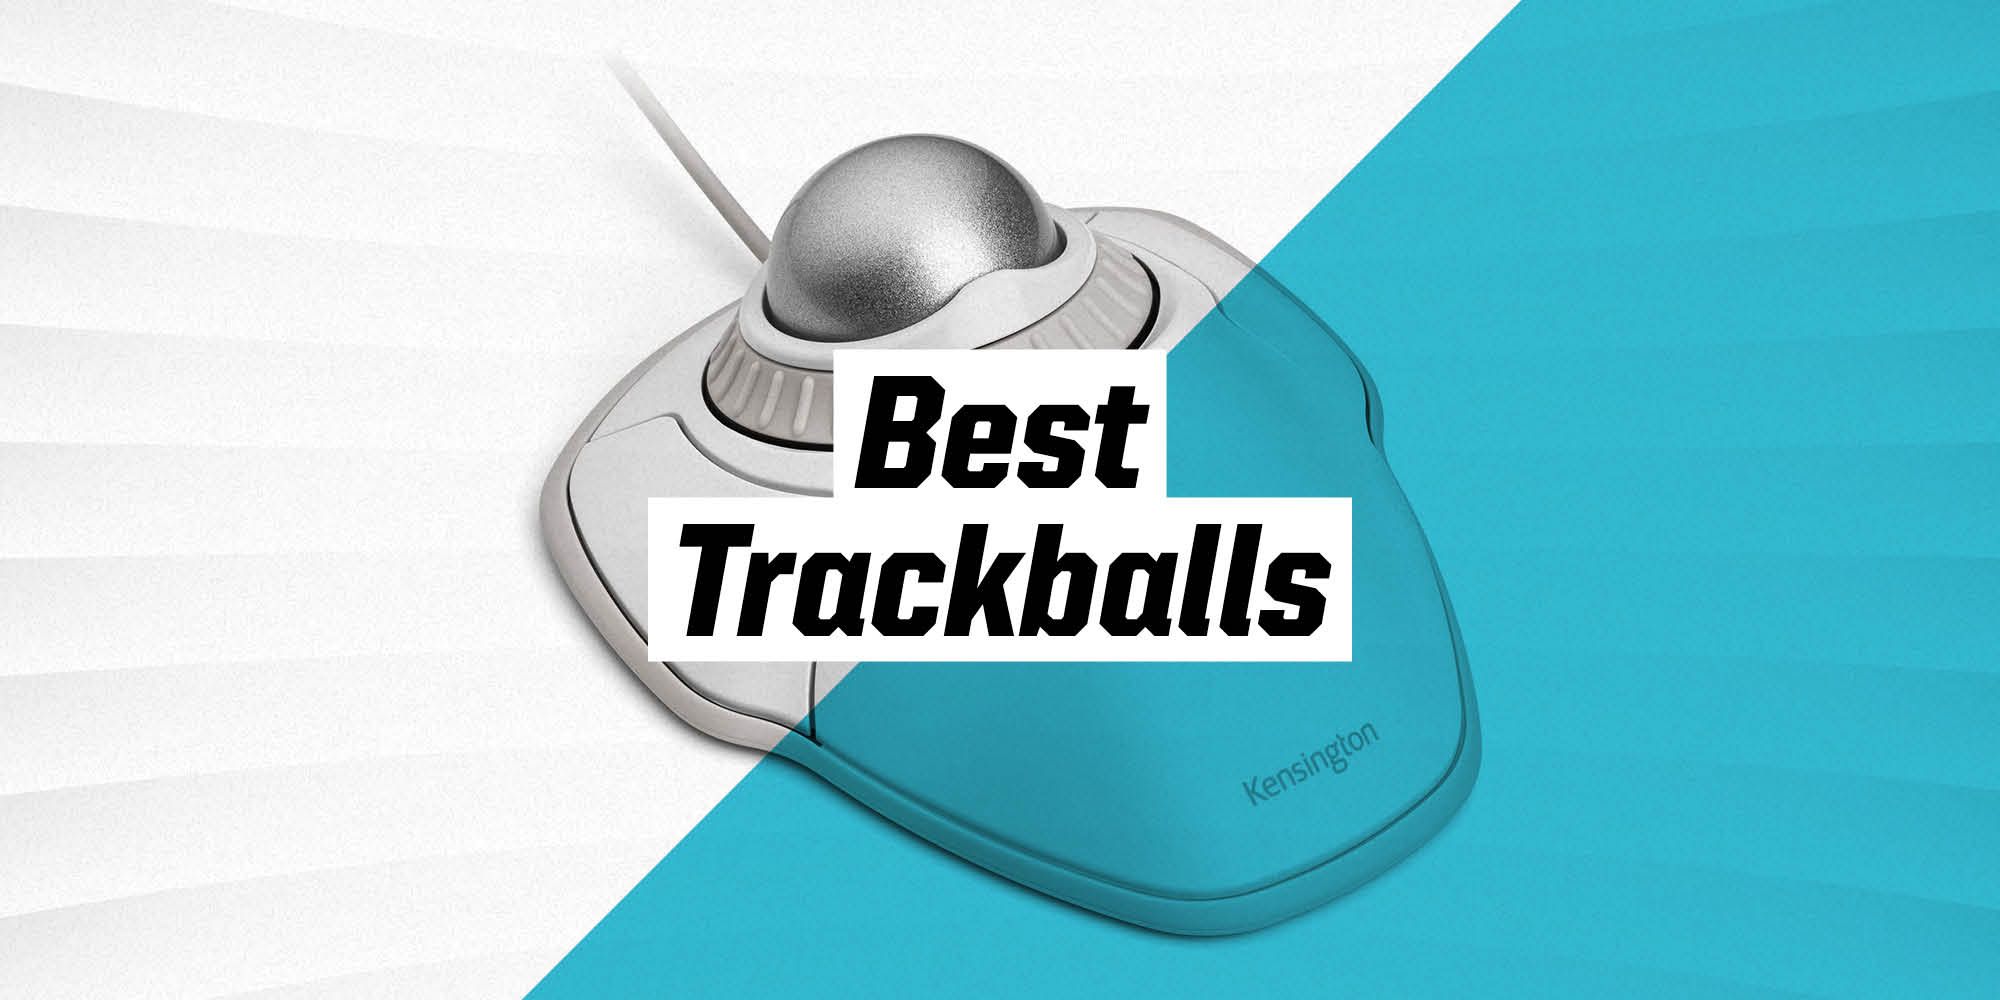 The 3 Best Trackballs for 2023